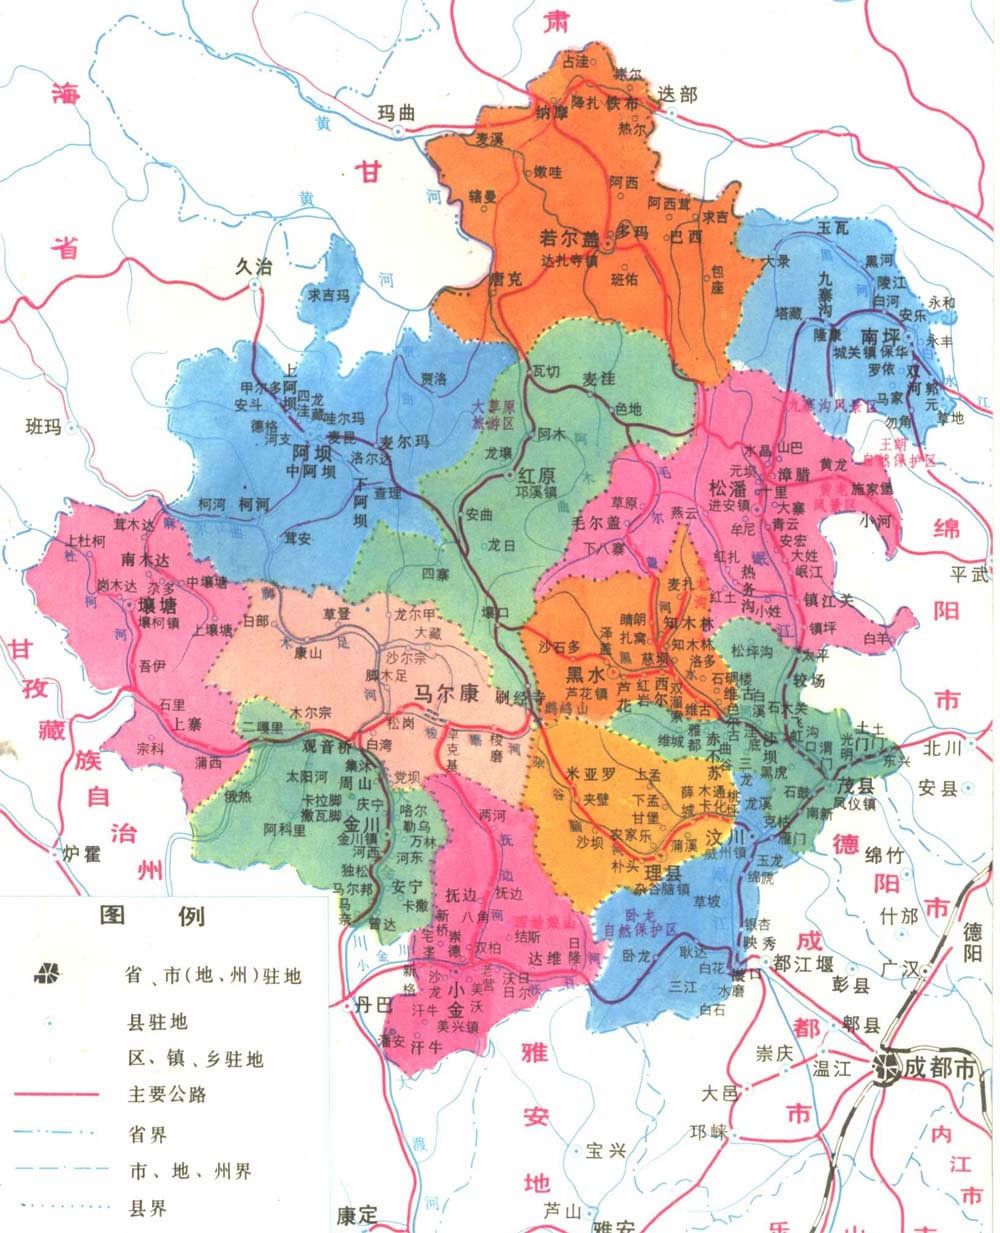 松潘,九寨沟,黑水等13县,市,219个乡镇(镇51个,乡168个),1354个行政村